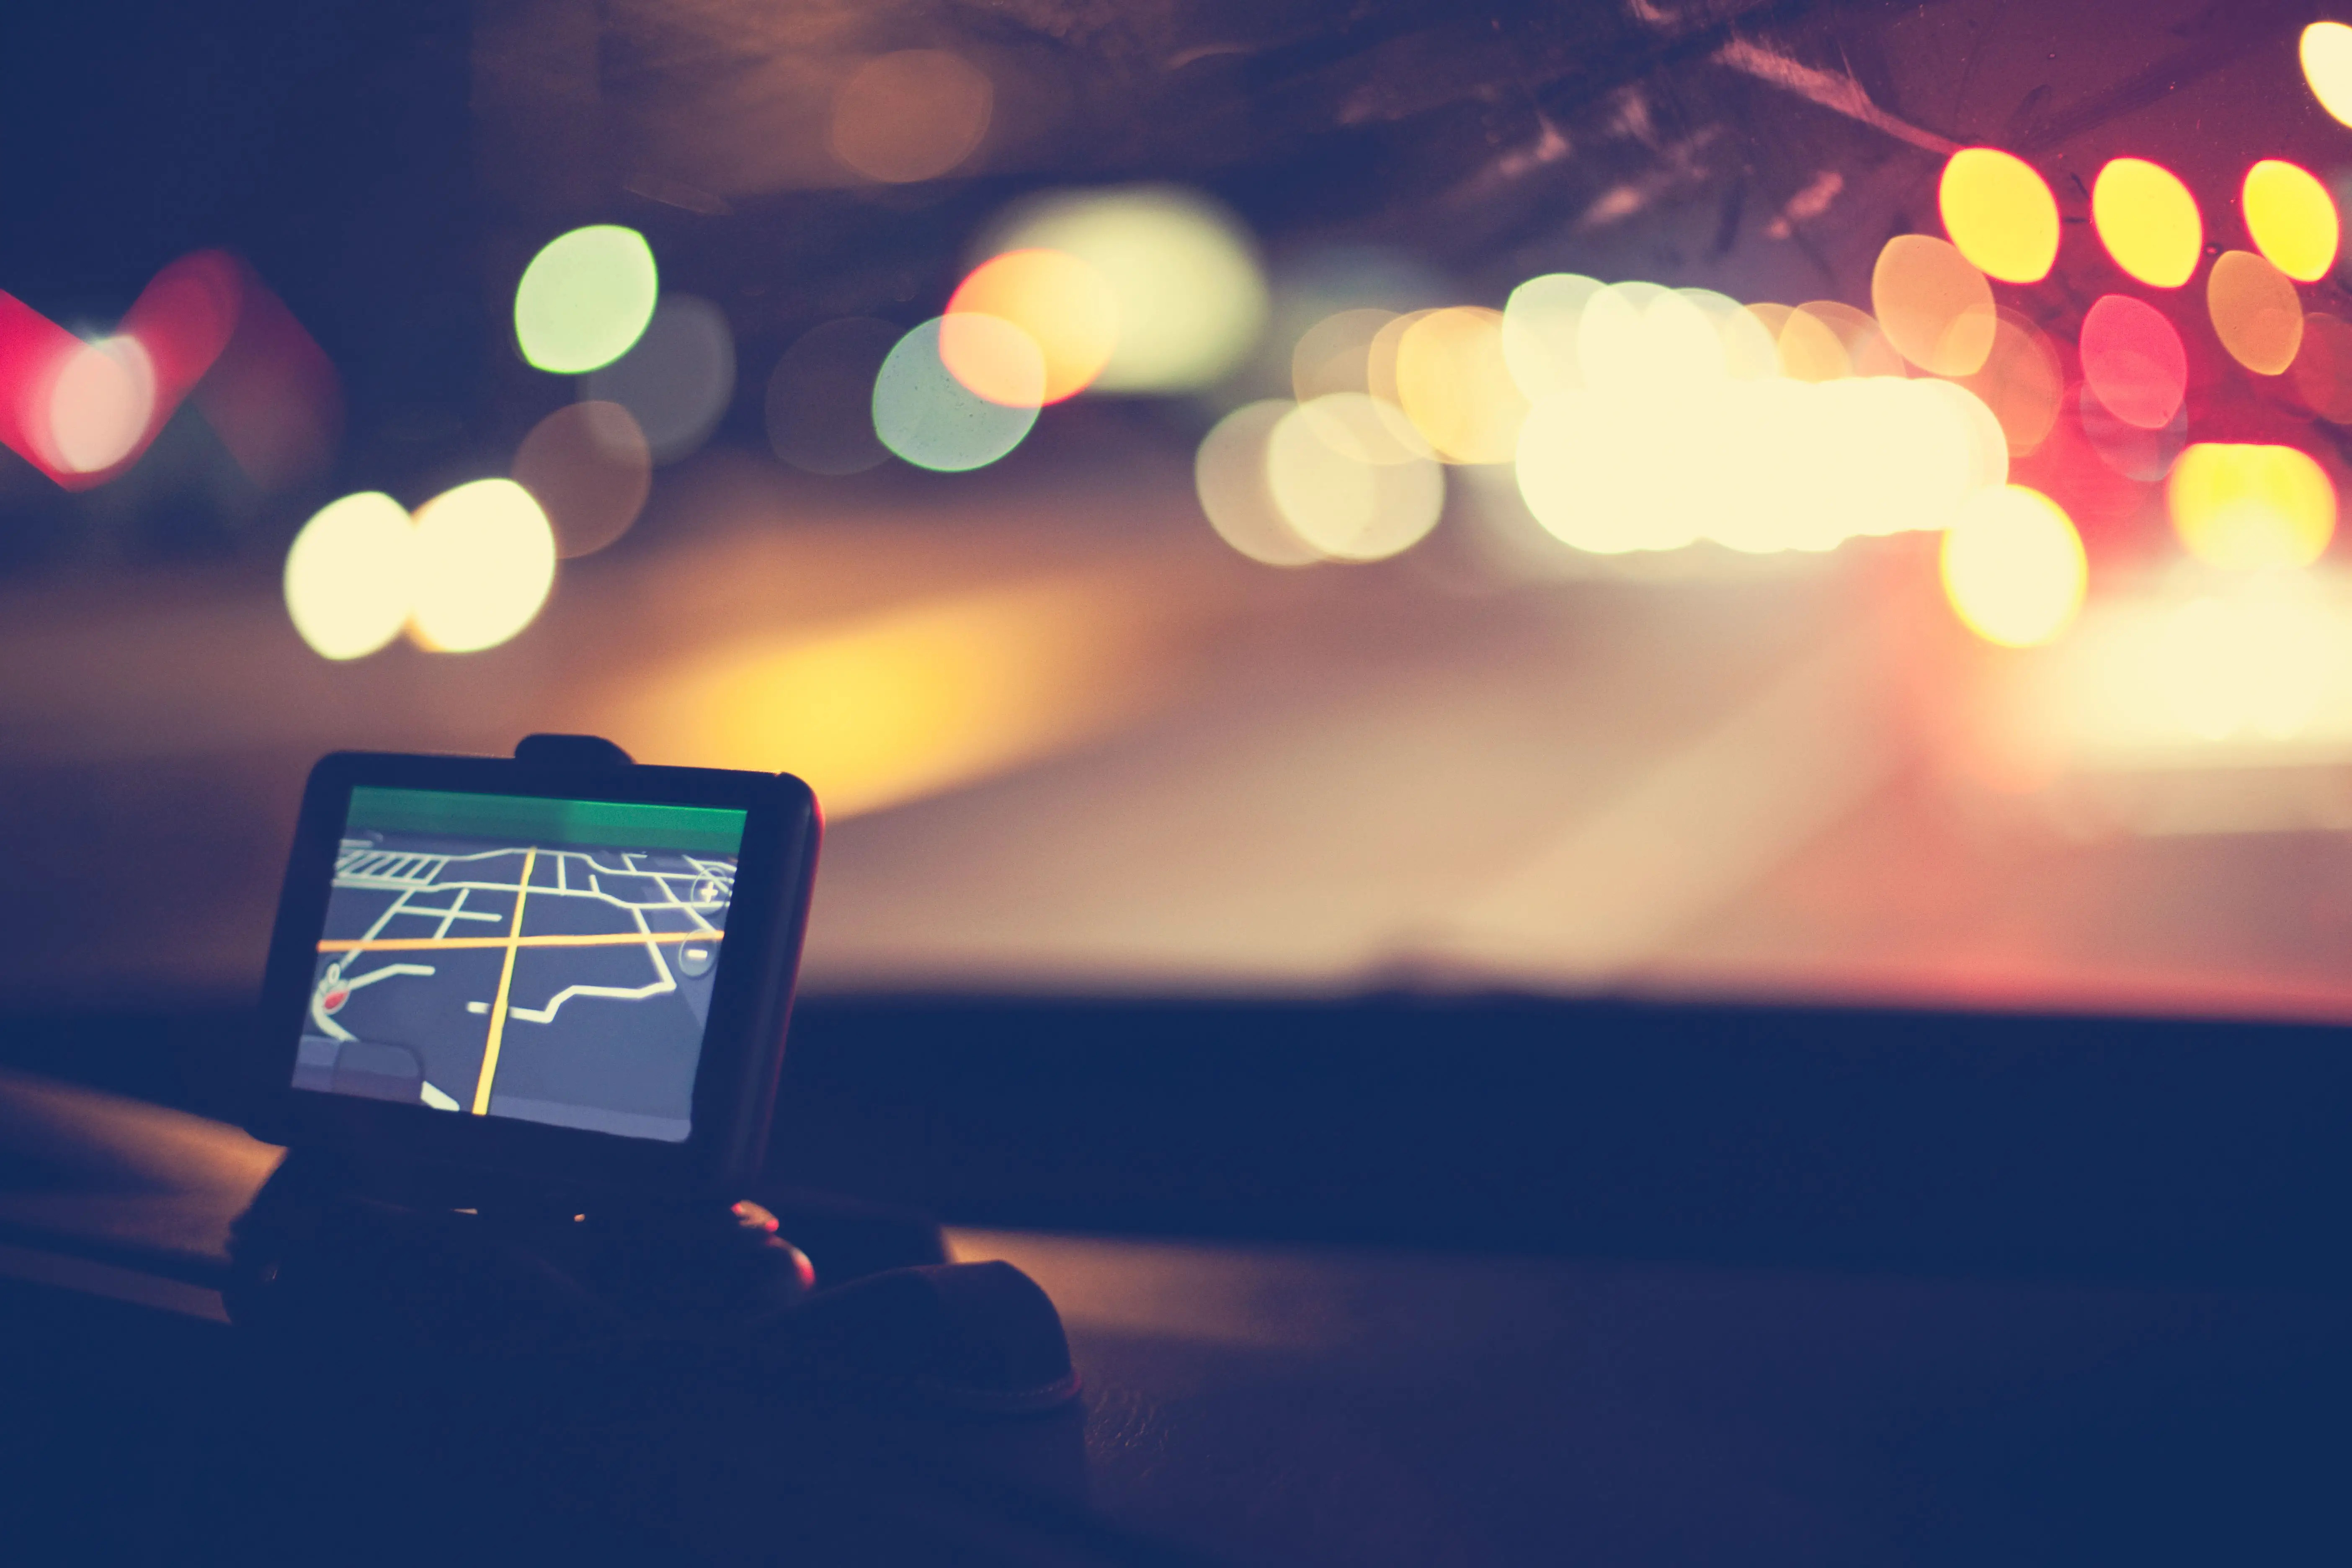 Sistema de navegação GPS no painel do carro